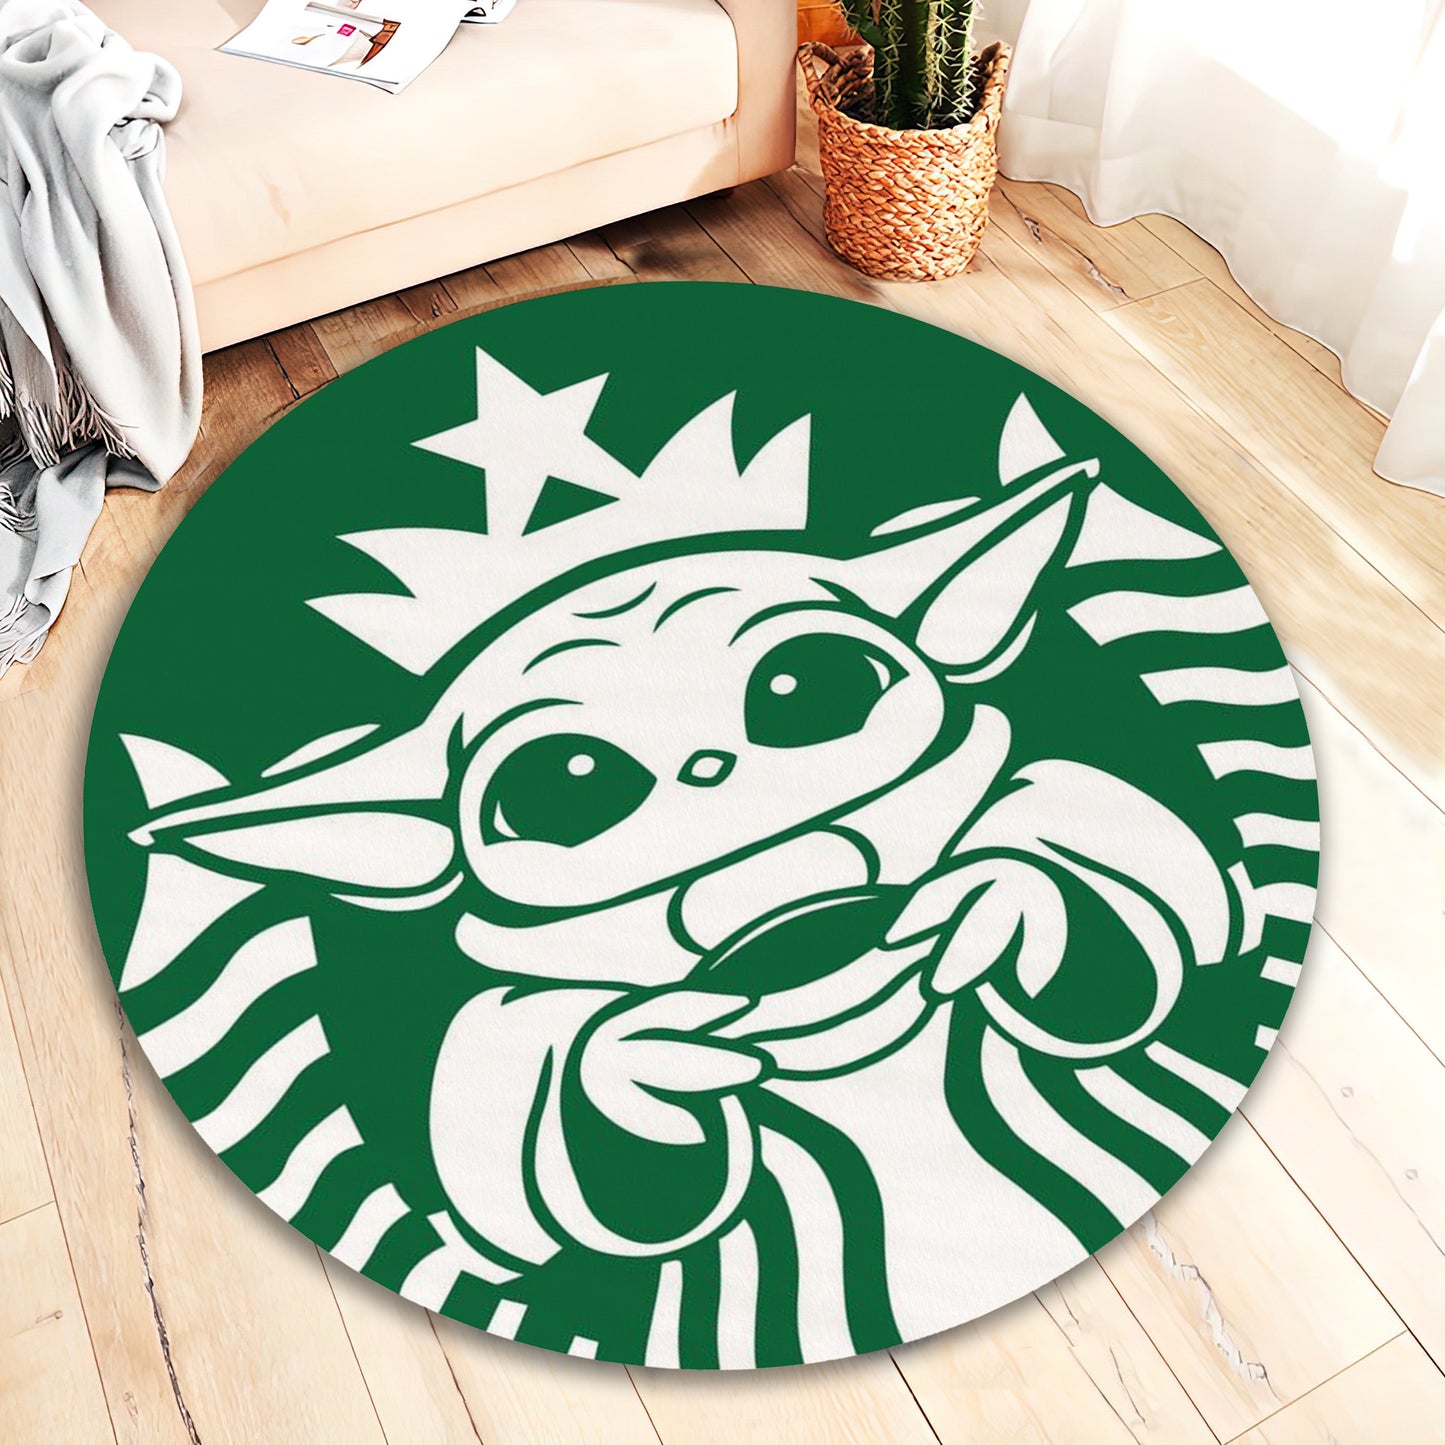 Star Wars Yoda Rug, Funny Starbucks Carpet, Bar Mat, Kitchen Decor, Galactic Rug